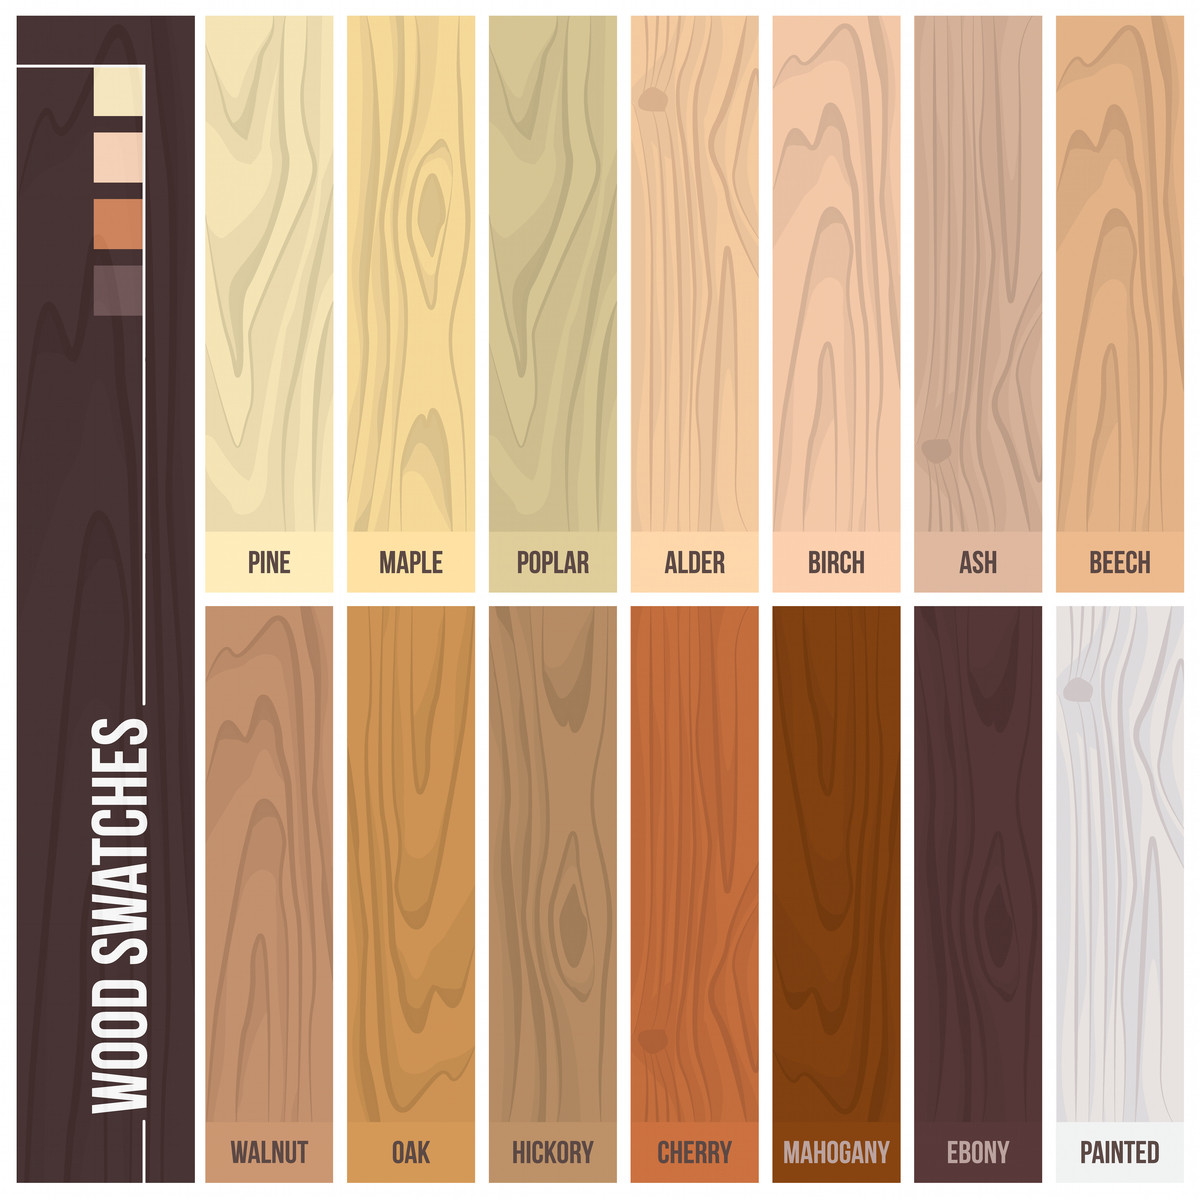 sanding hardwood floors diy of 12 types of hardwood flooring species styles edging dimensions in types of hardwood flooring illustrated guide